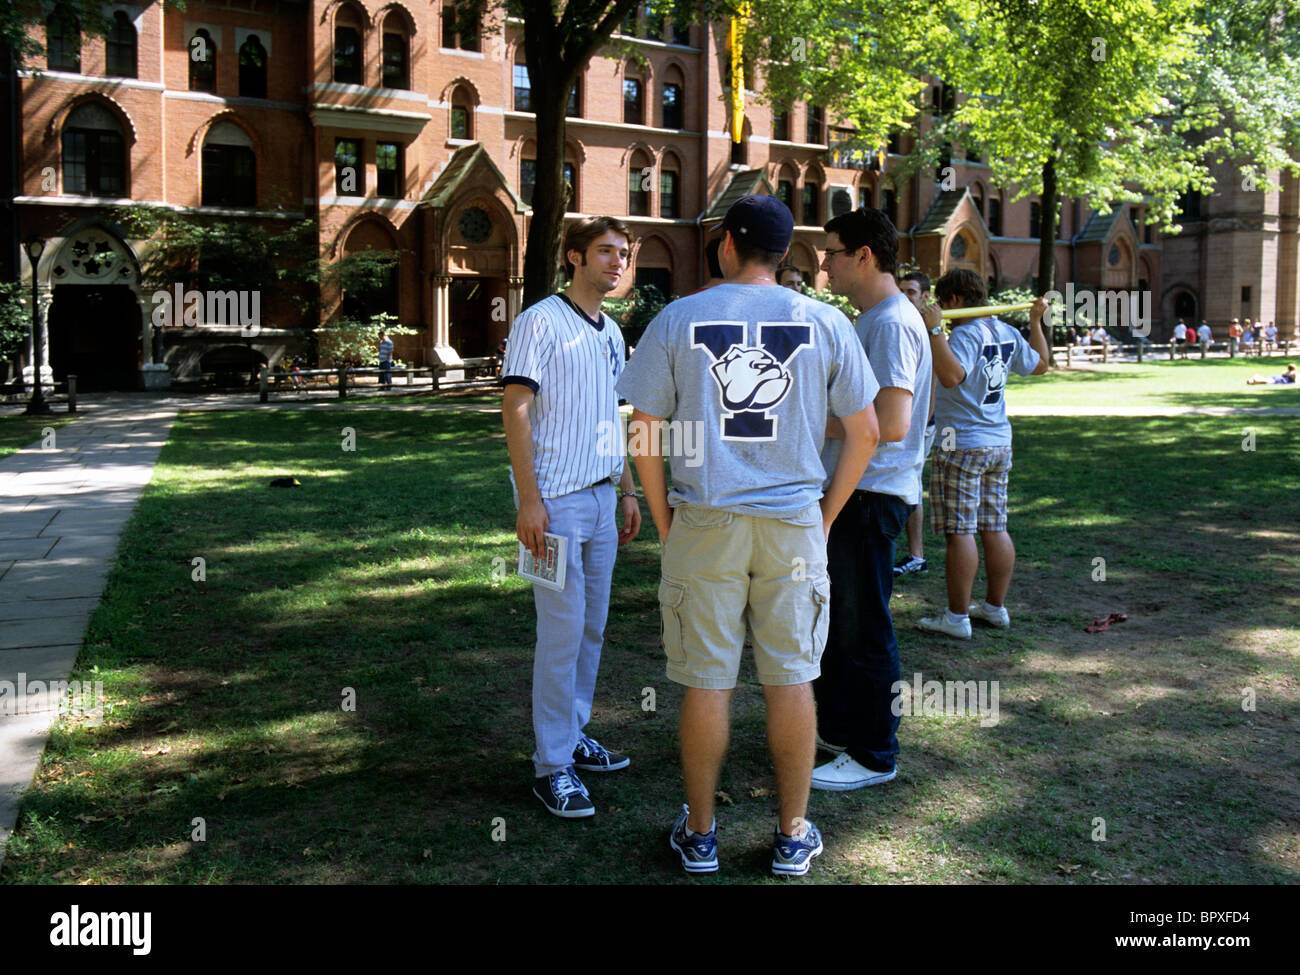 Studenten der Yale University versammeln sich auf dem College-Campus. Ivy League School. Sportliche oder sportliche Aktivitäten. Y-Logo auf dem Shirt. Stockfoto